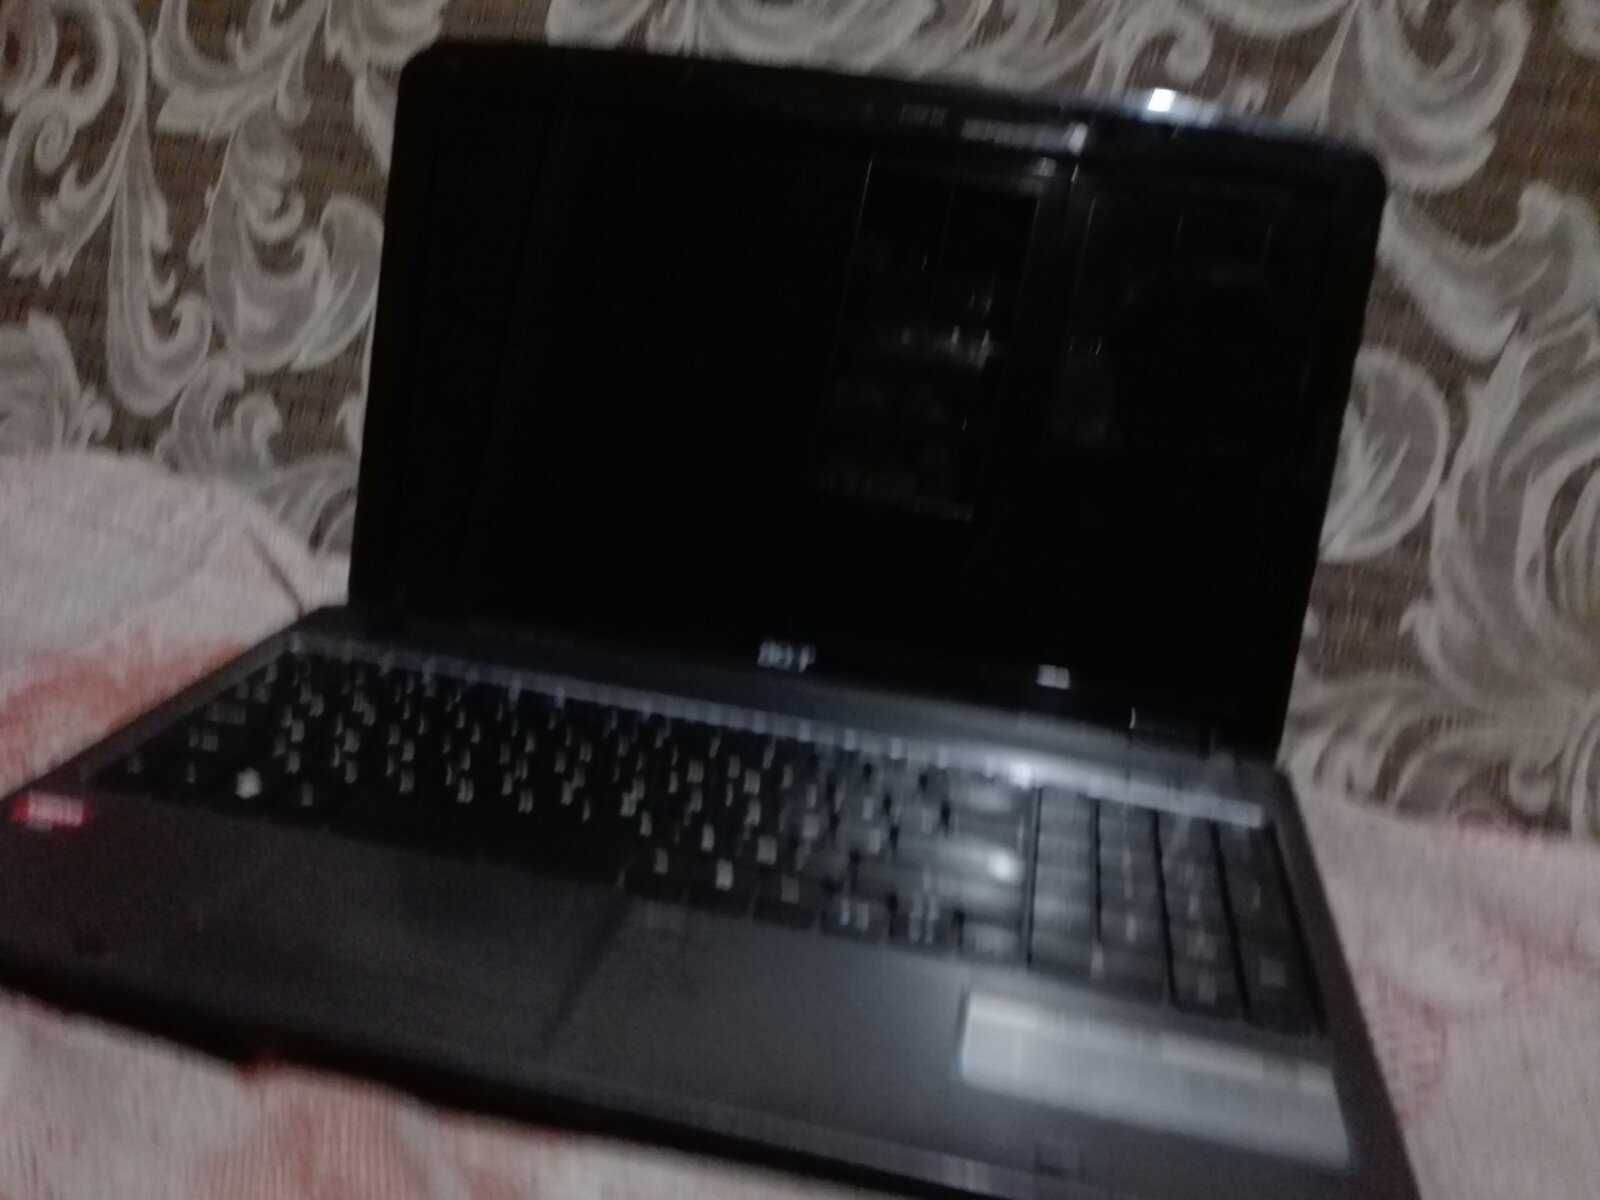 Ноутбук Aser3G
320g